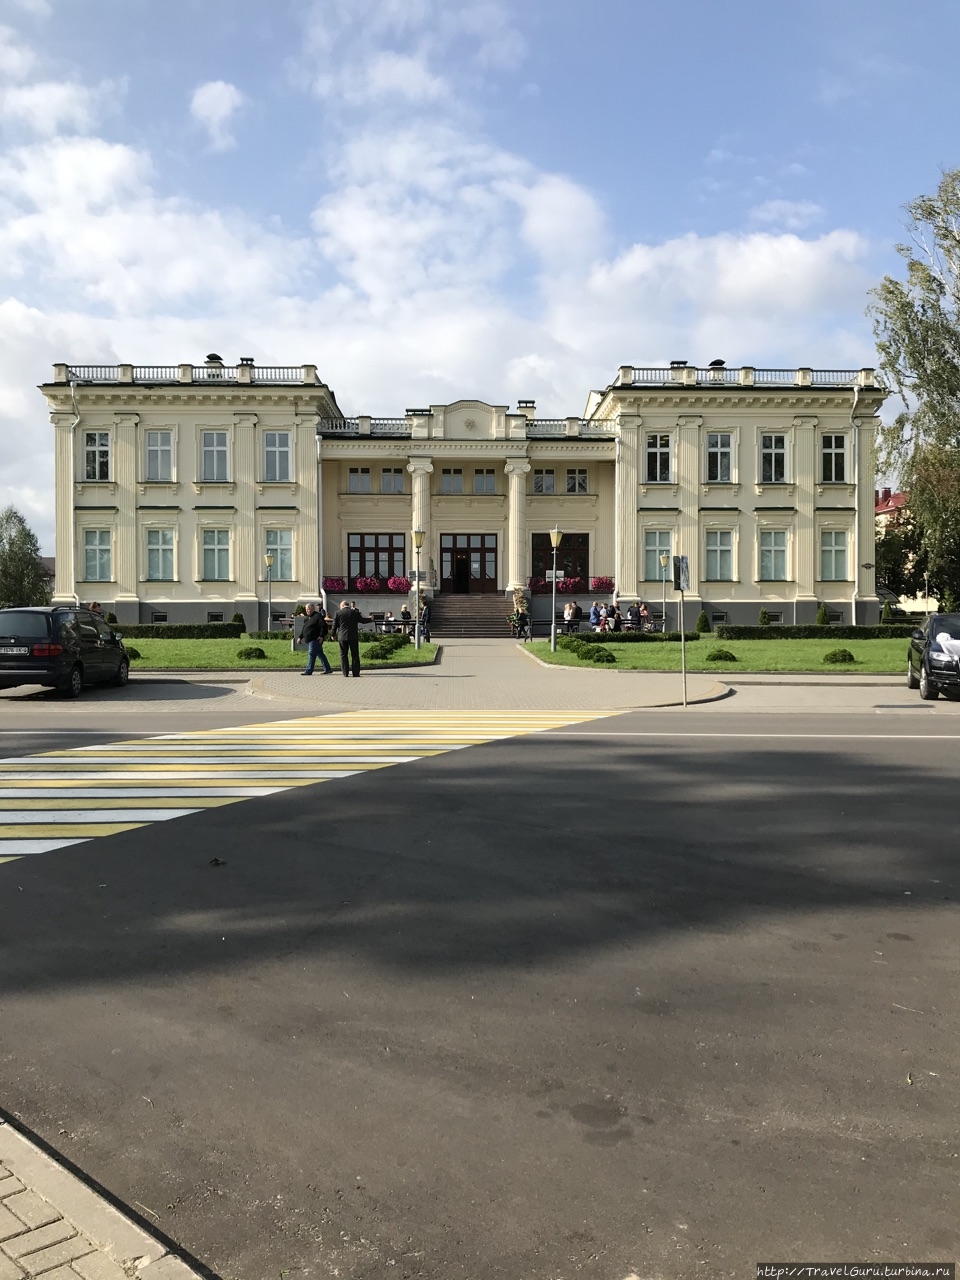 Щучин: город без щук, но с аристократическим наследием Щучин, Беларусь